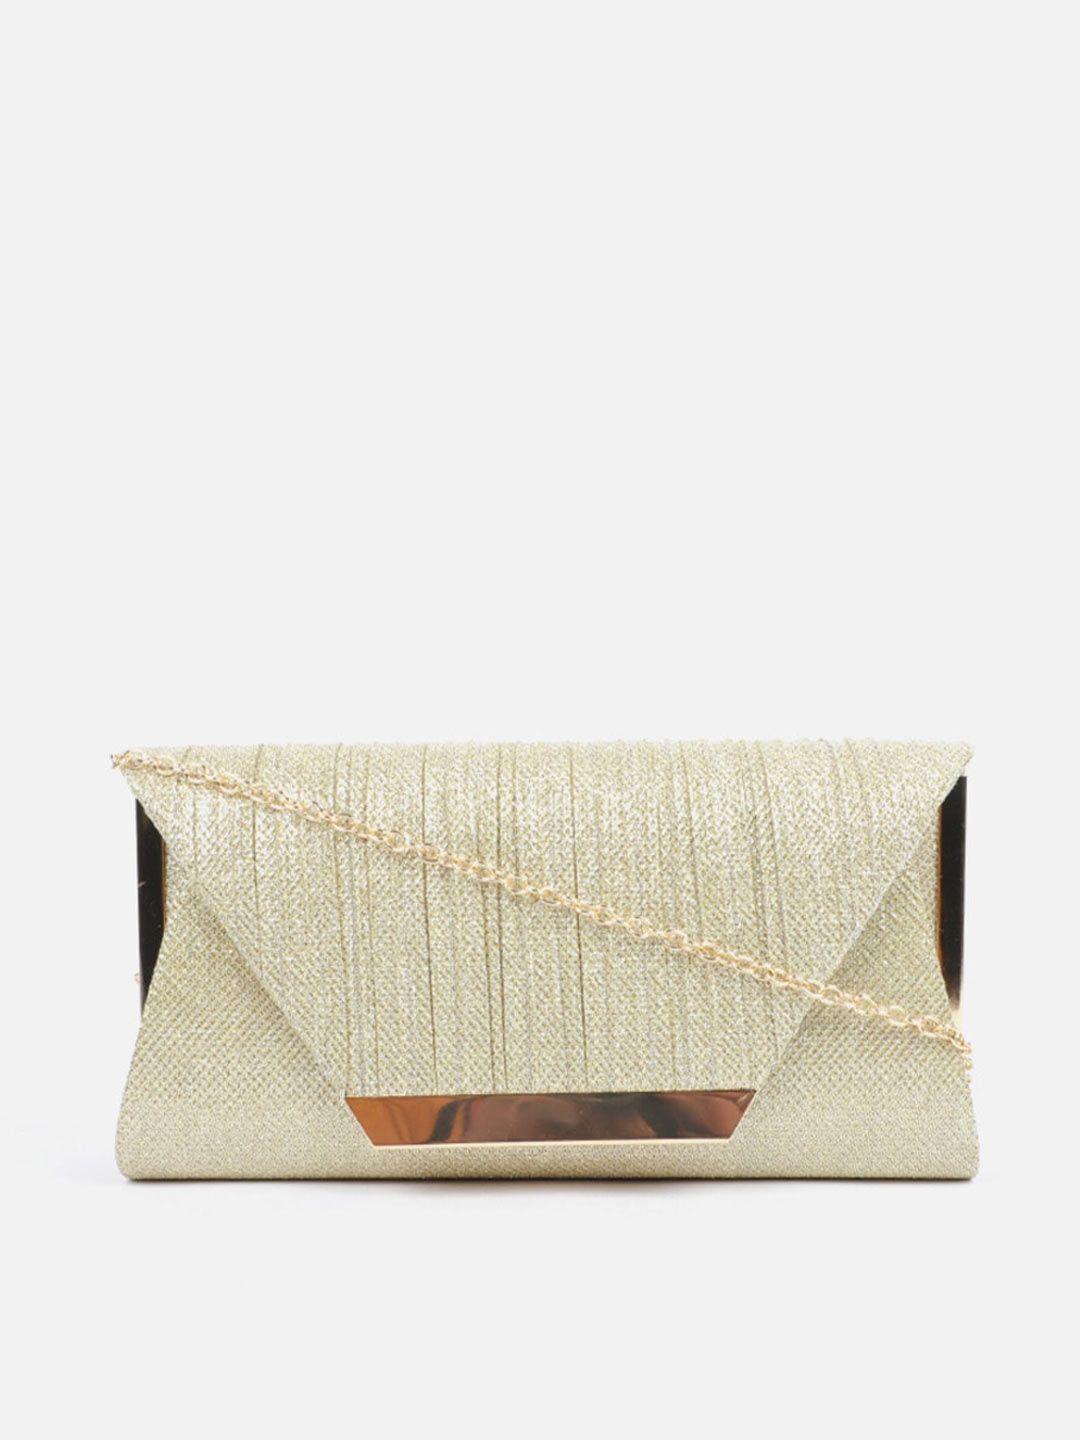 carlton london textured purse clutch